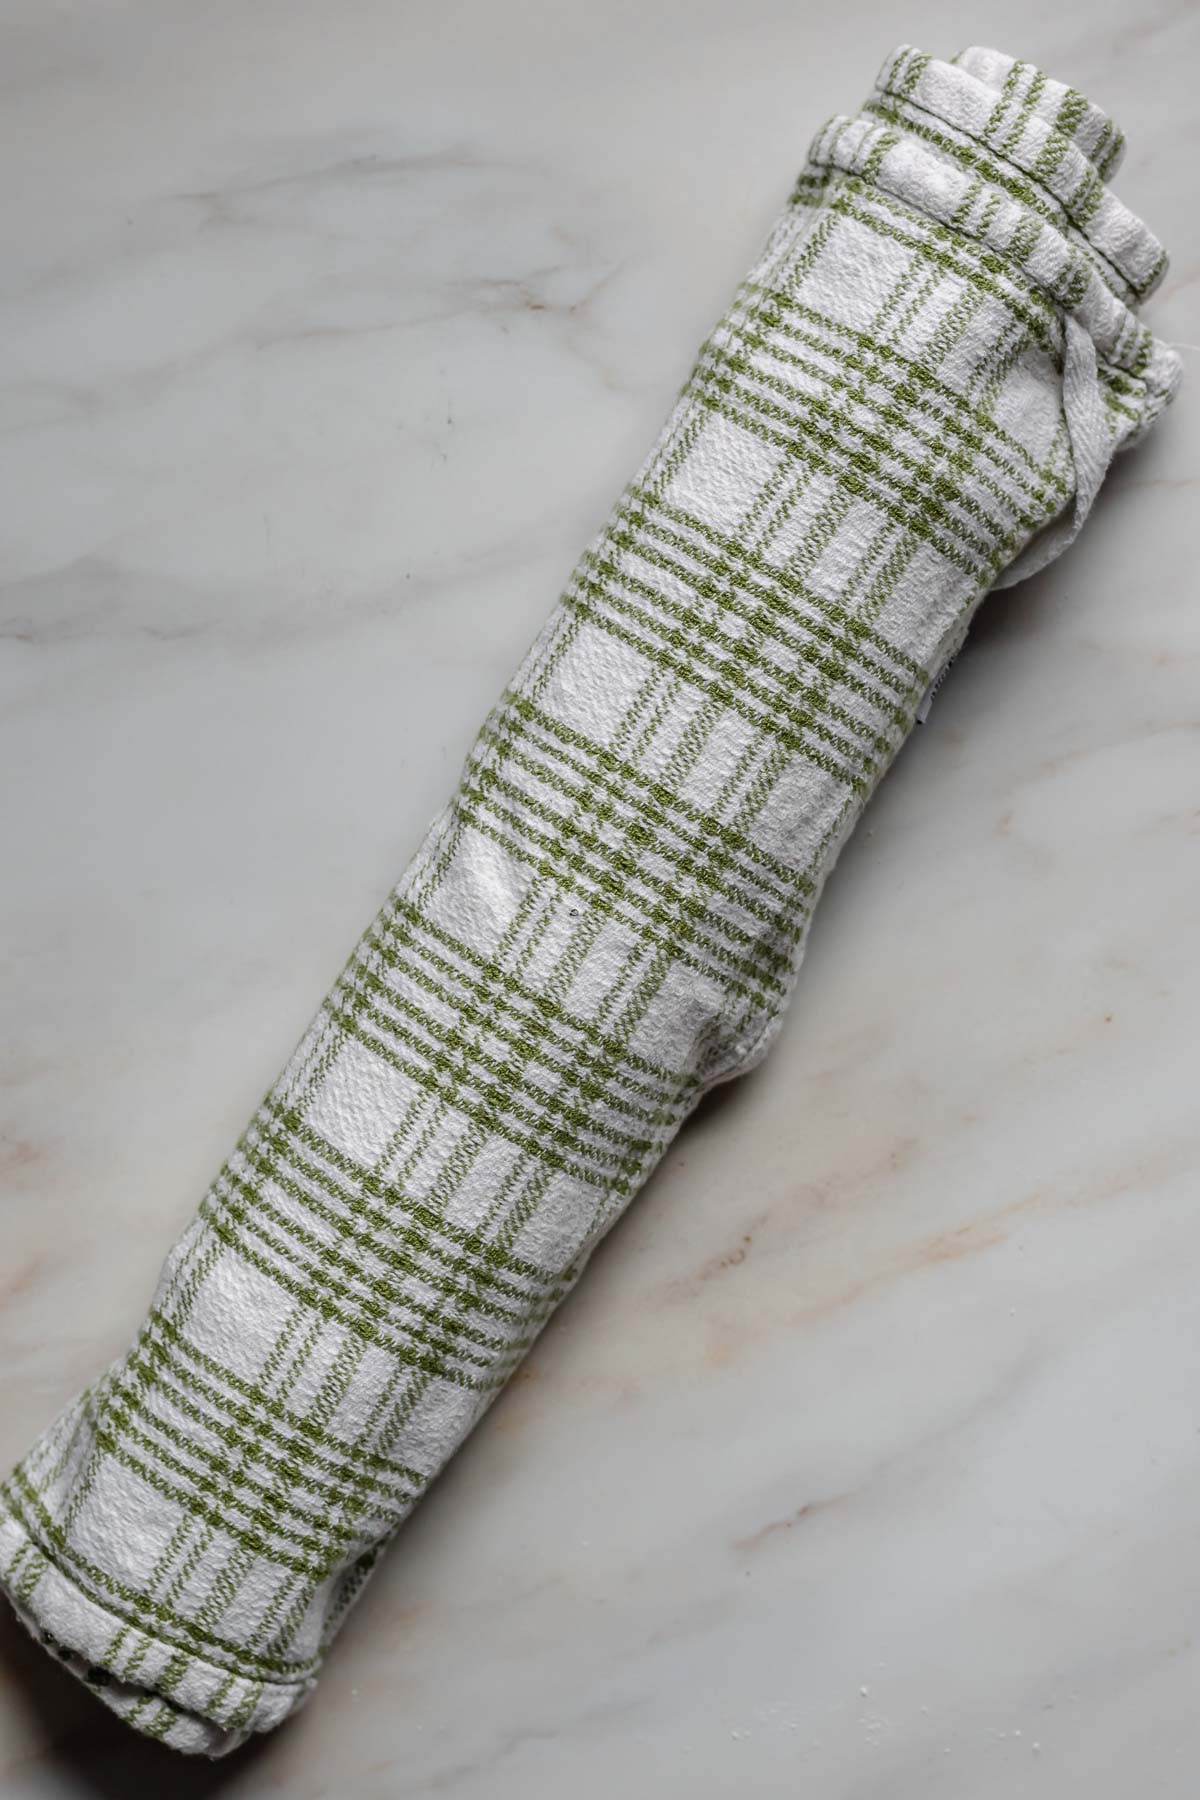 Swiss roll in a kitchen towel.